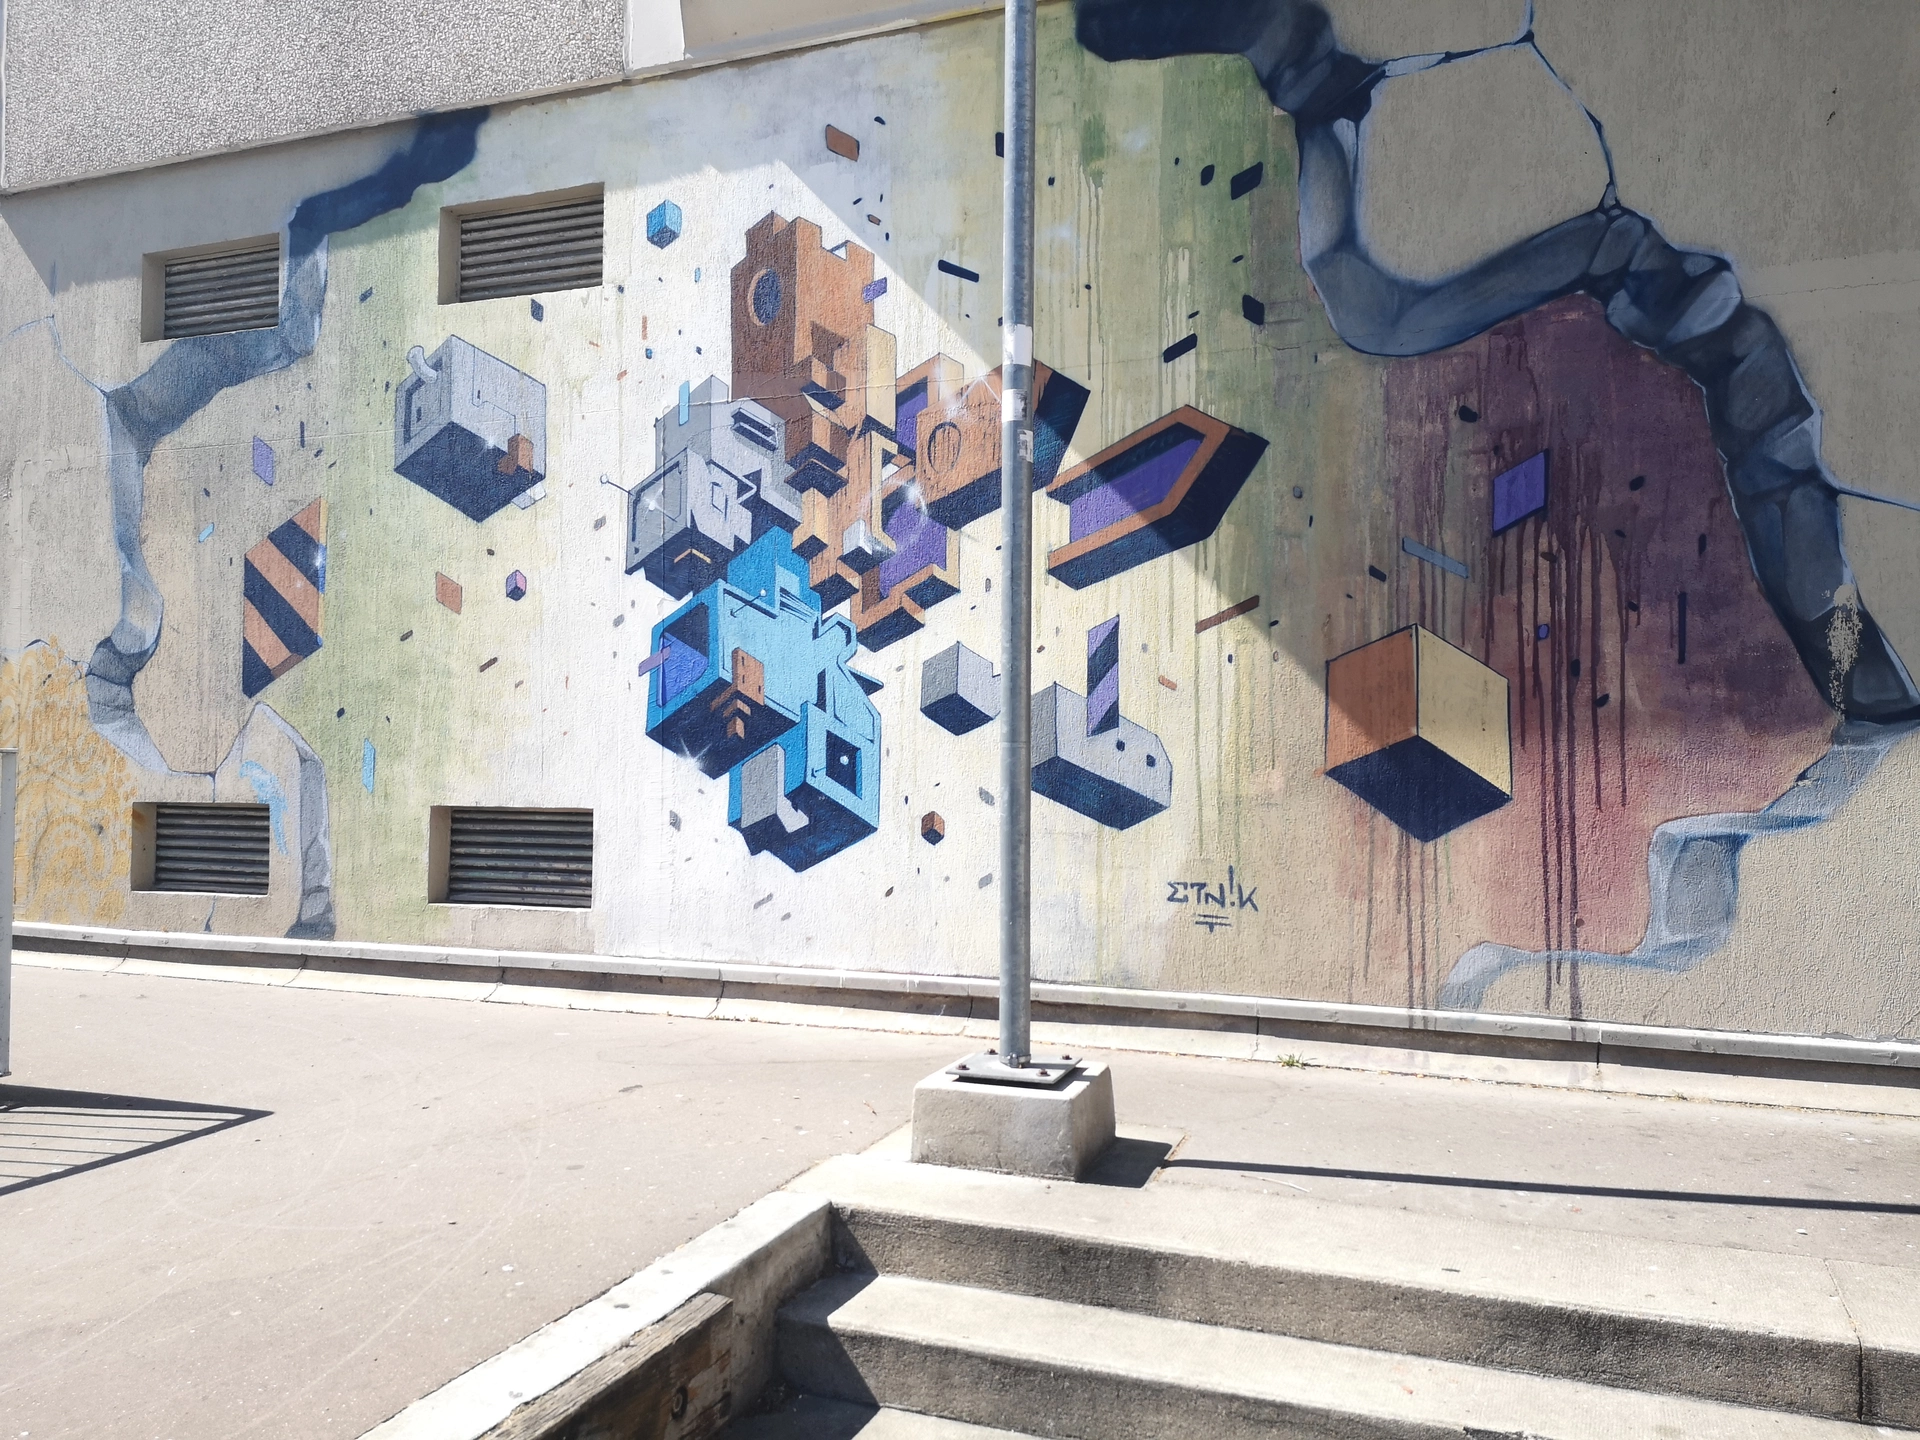 Oeuvre de Street Art réalisée par Etnik à Vitry-sur-Seine